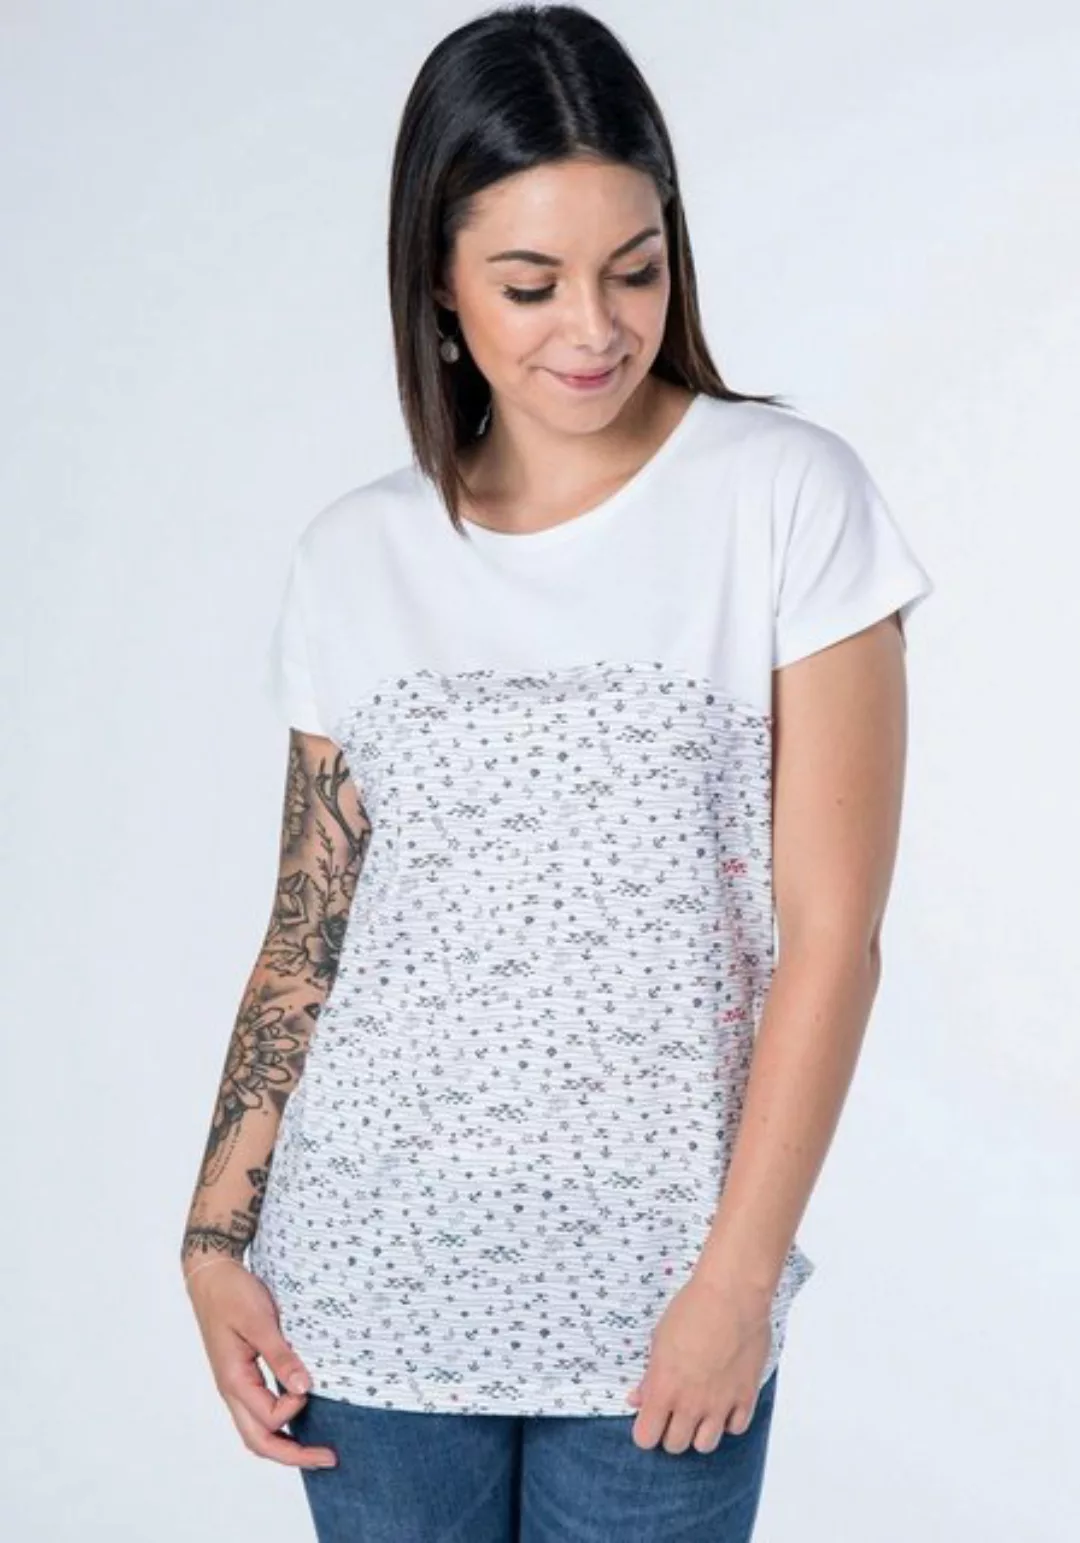 Alife & Kickin T-Shirt trendy Longshirt mit Streifen-oder Musterprints günstig online kaufen